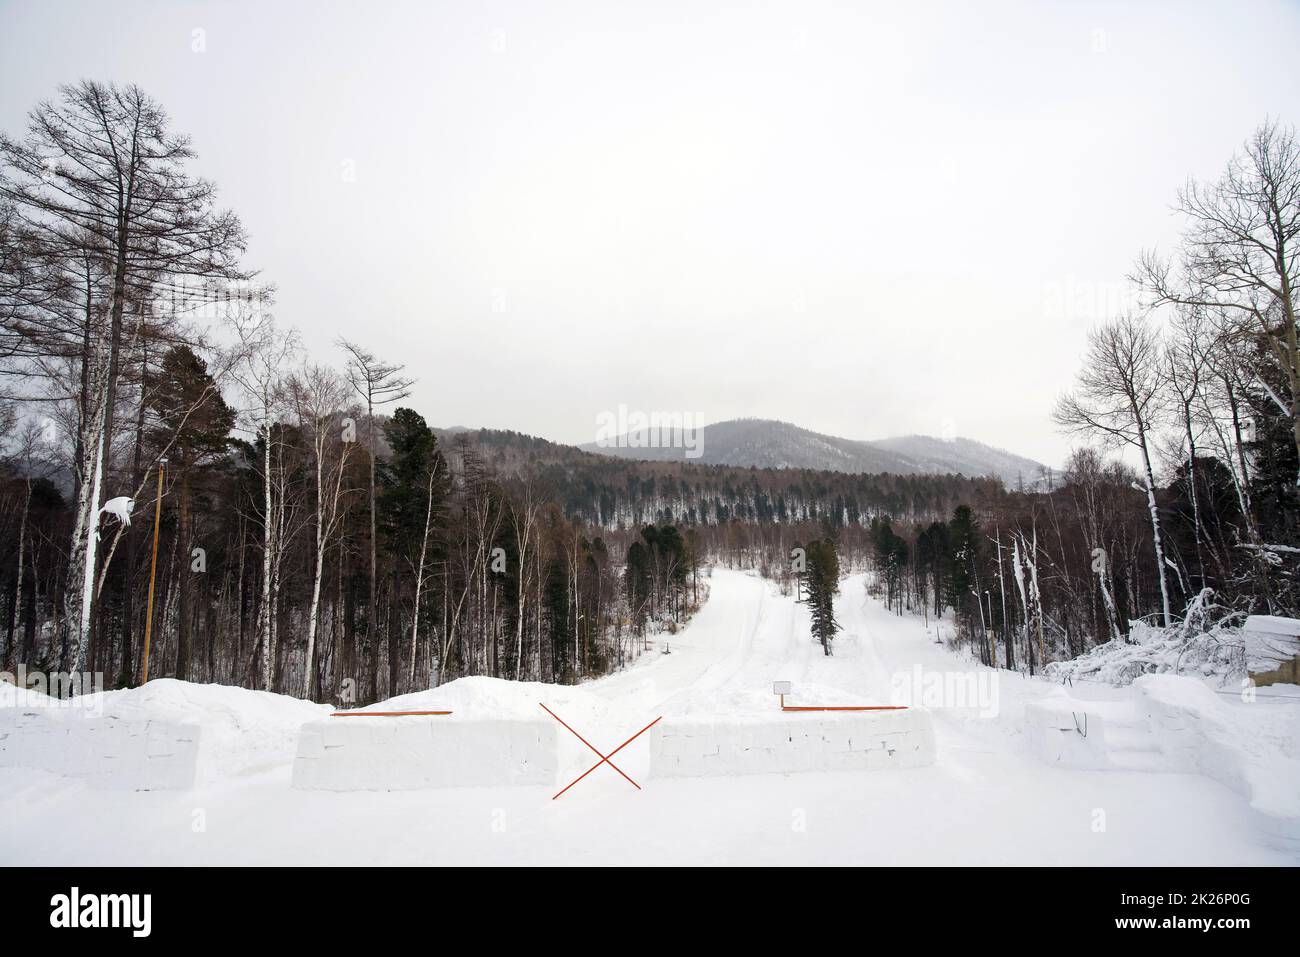 Le aree sciistiche e per lo snowboard sono circondate da splendidi paesaggi nella stagione invernale. C'è uno ski-pole che blocca la strada verso il basso perché non è ancora aperto per il servizio. Foto Stock